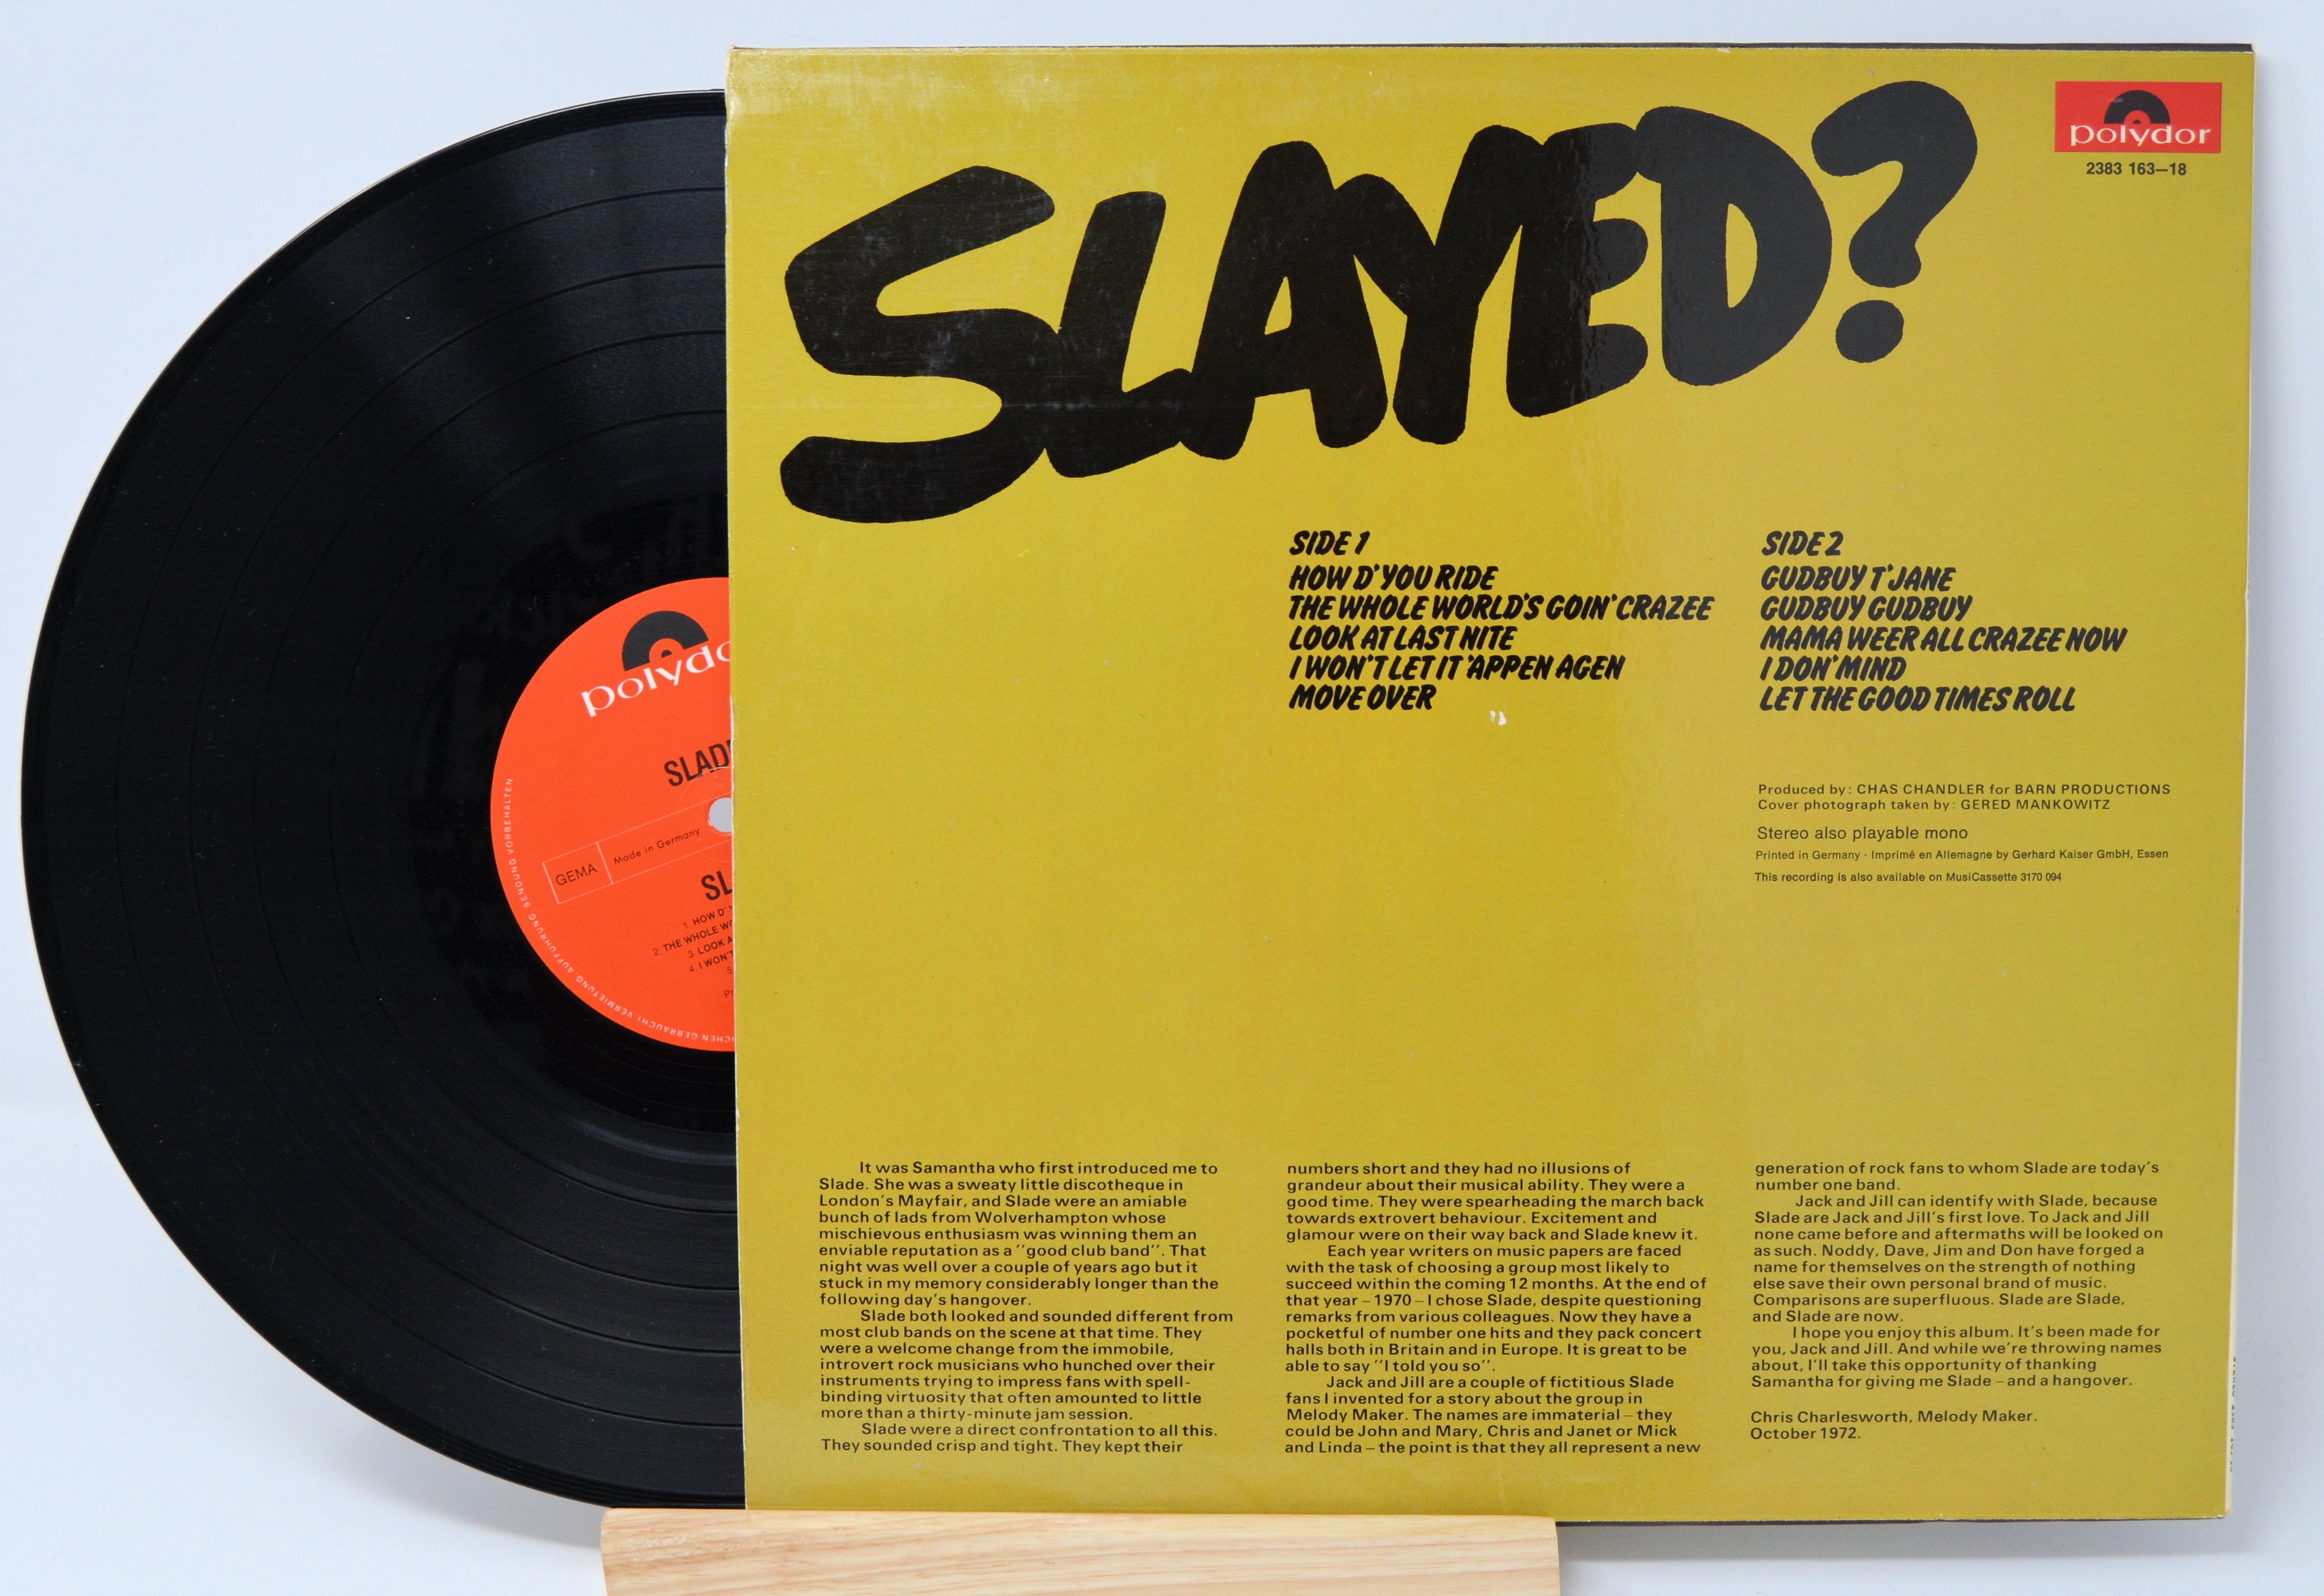 Slade - Slayed?, Vinyl Record Album LP, Polydor – Joe's Albums